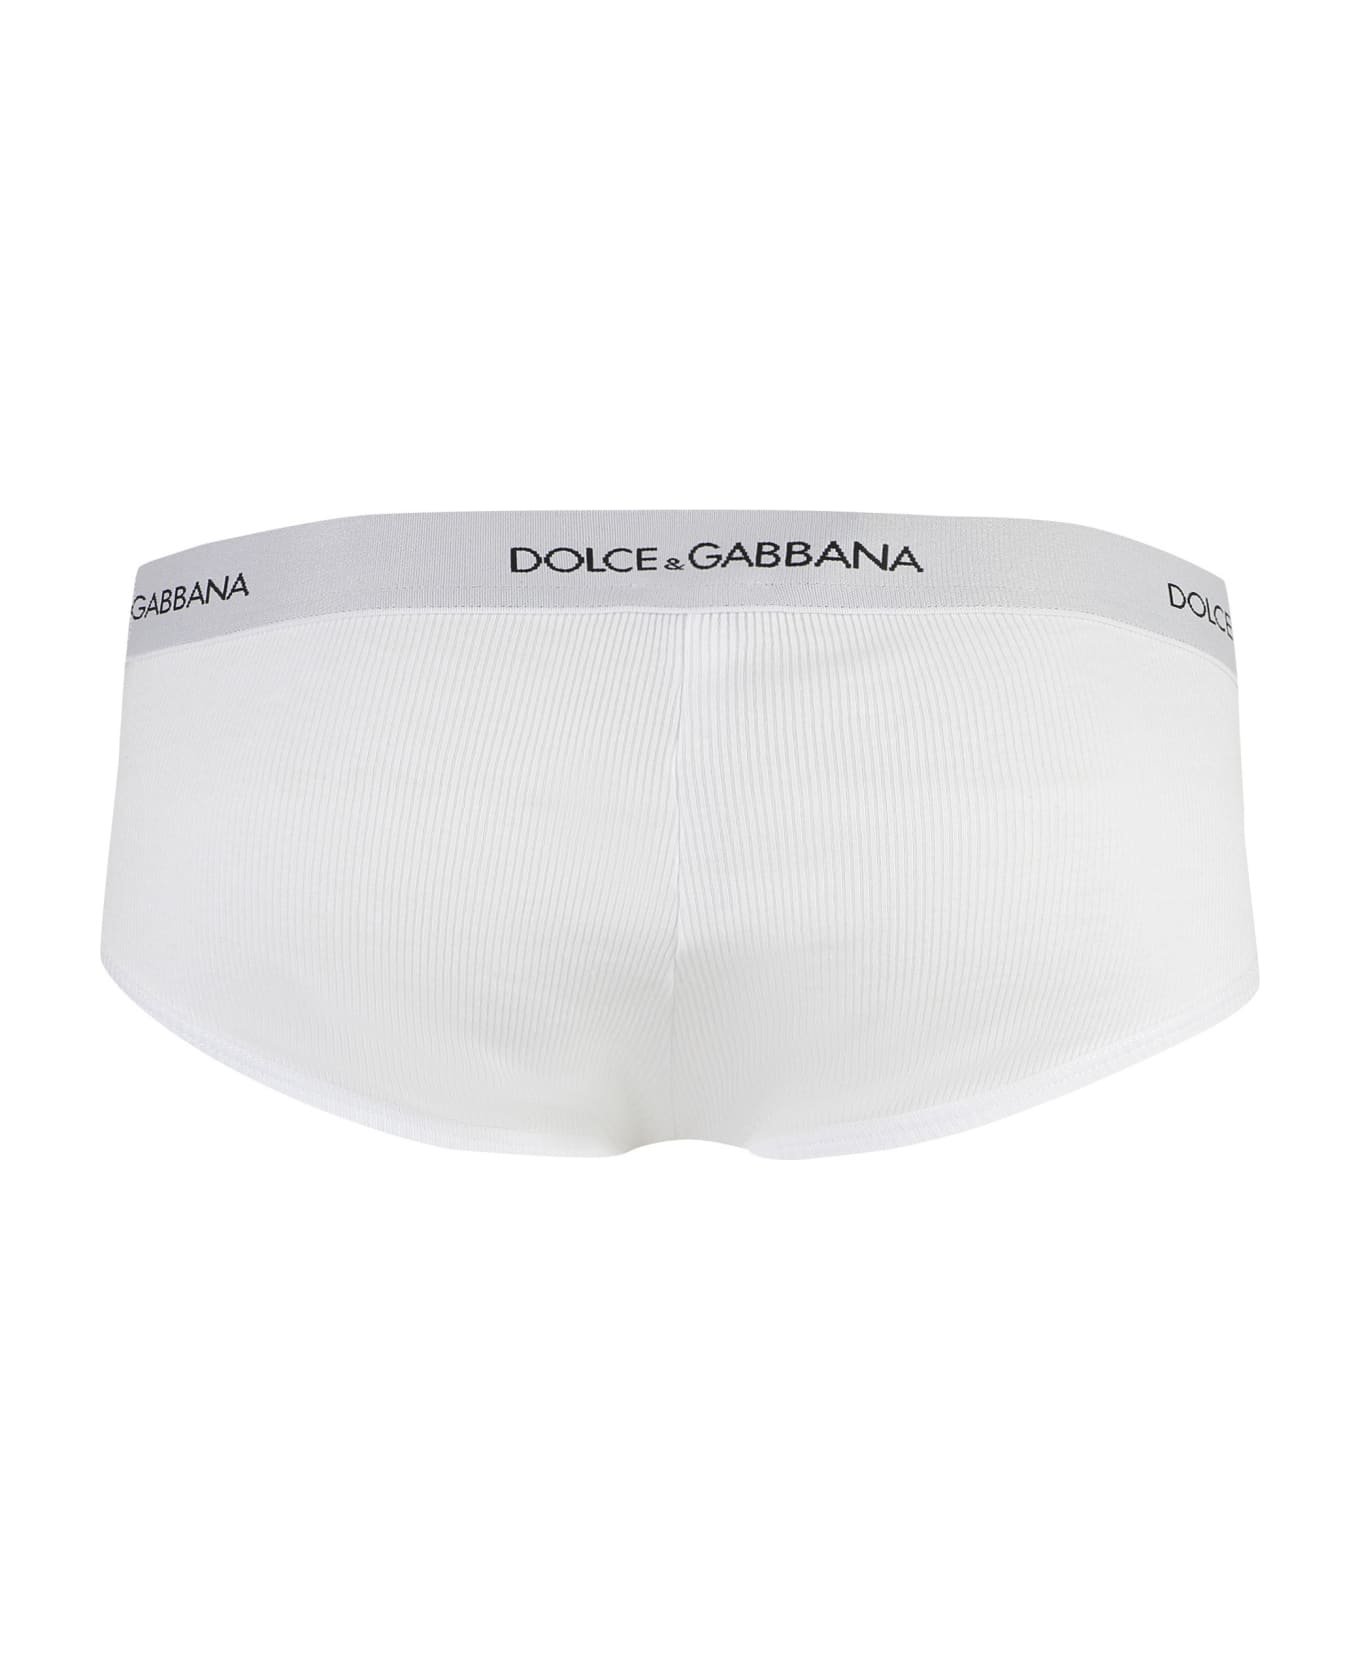 Dolce & Gabbana Plain Color Briefs - BIACO OTTICO ショーツ